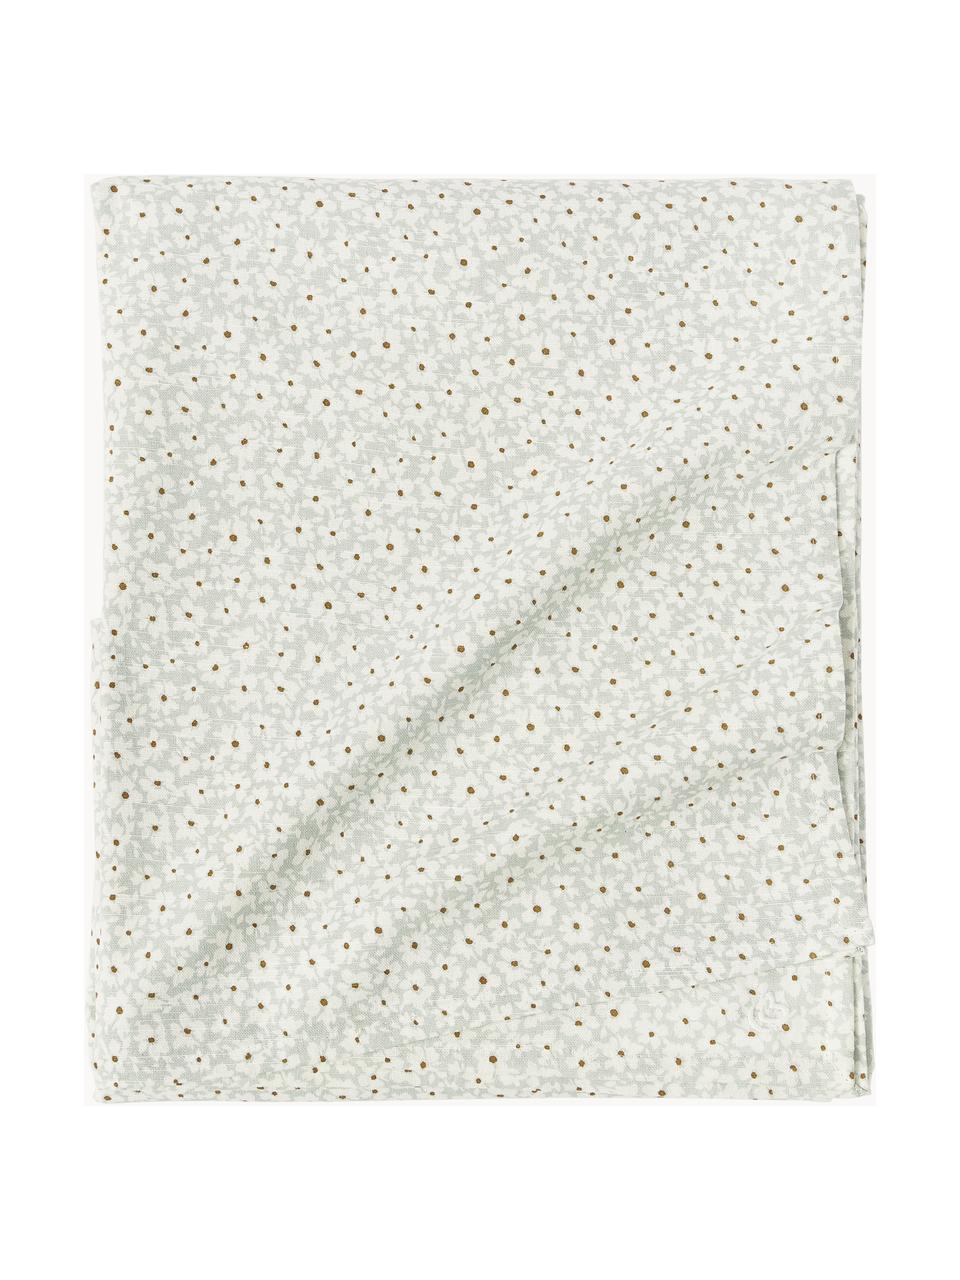 Nappe en coton à motif fleuri Liberte, 100 % coton, Vert sauge, blanc cassé, fleurs-motif figuratif, 6-8 personnes (long. 220 x larg. 140 cm)